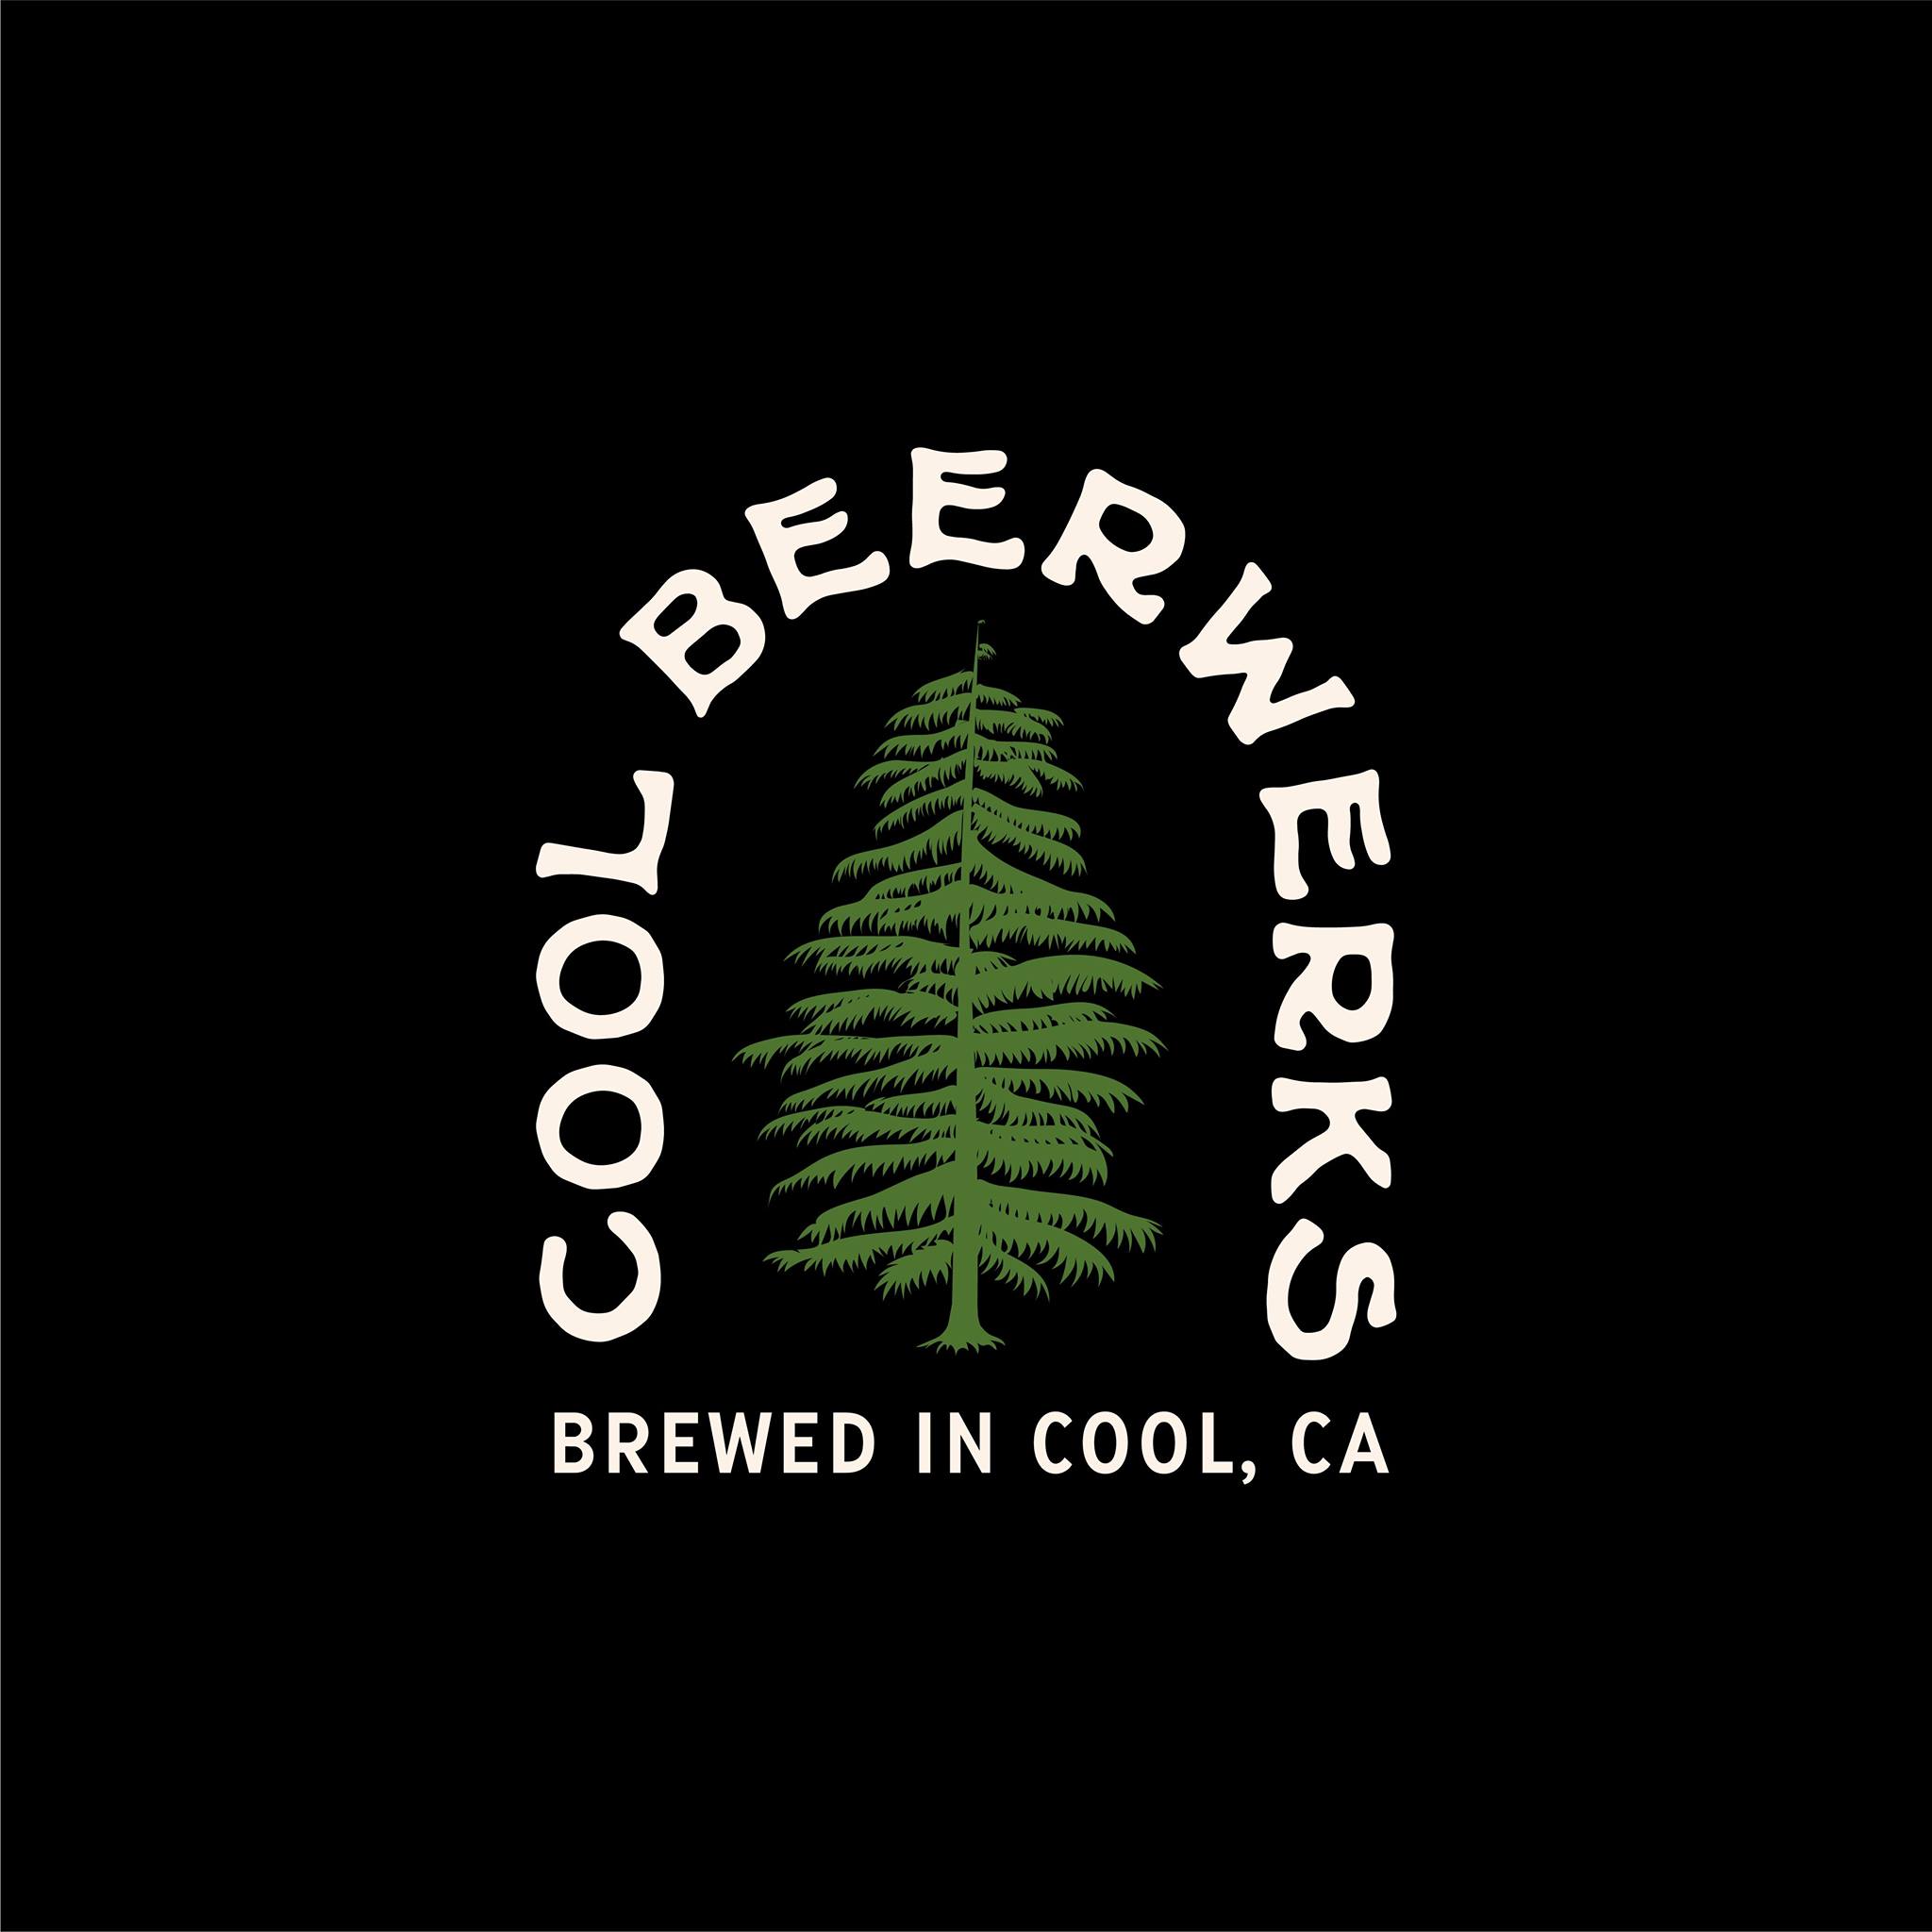 Cool Beerwerks